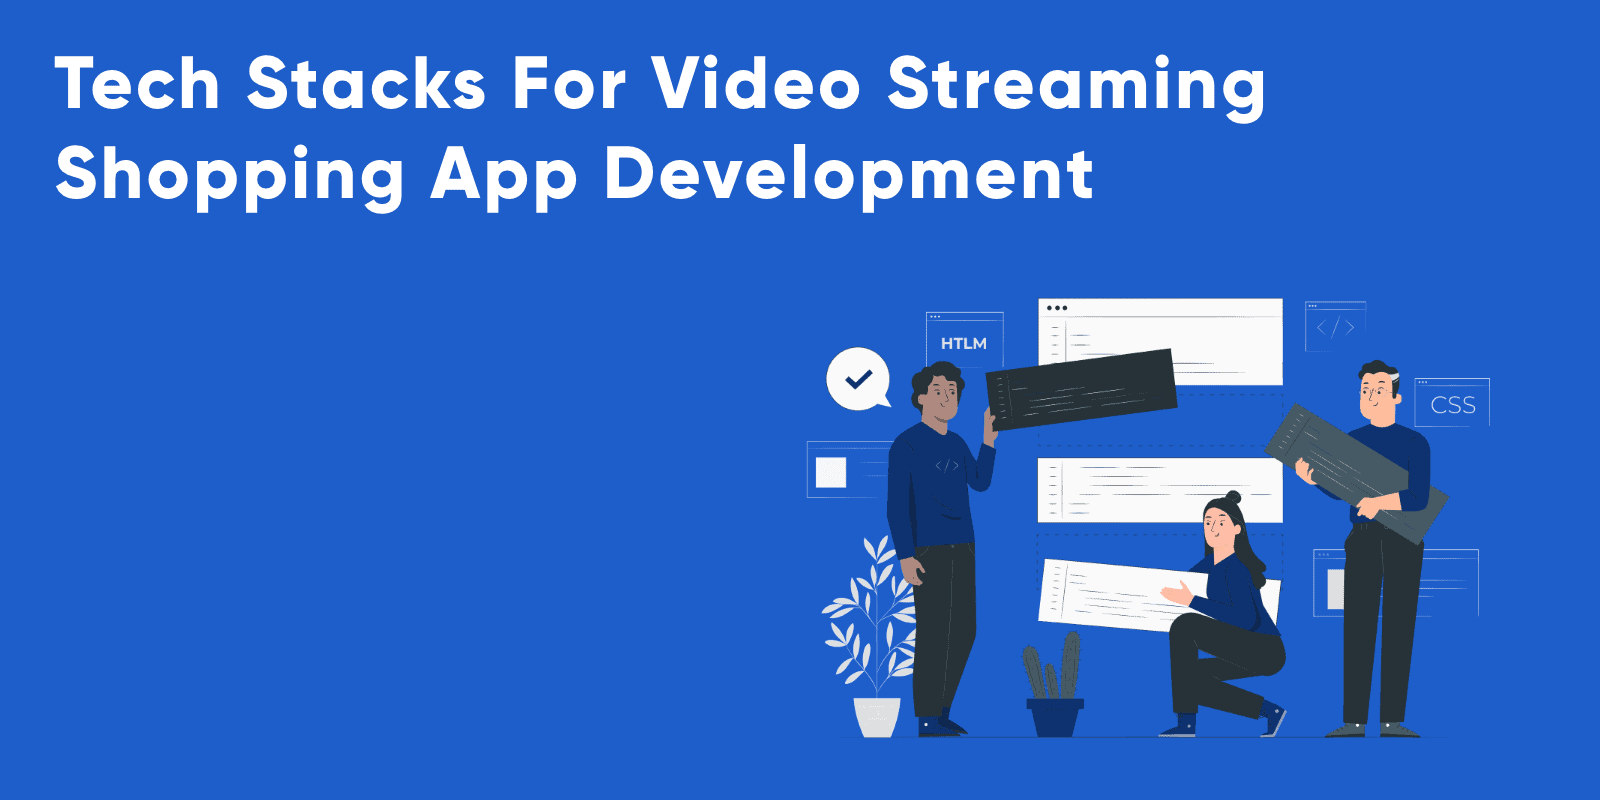 Pilas tecnológicas para el desarrollo de aplicaciones de compras por video.